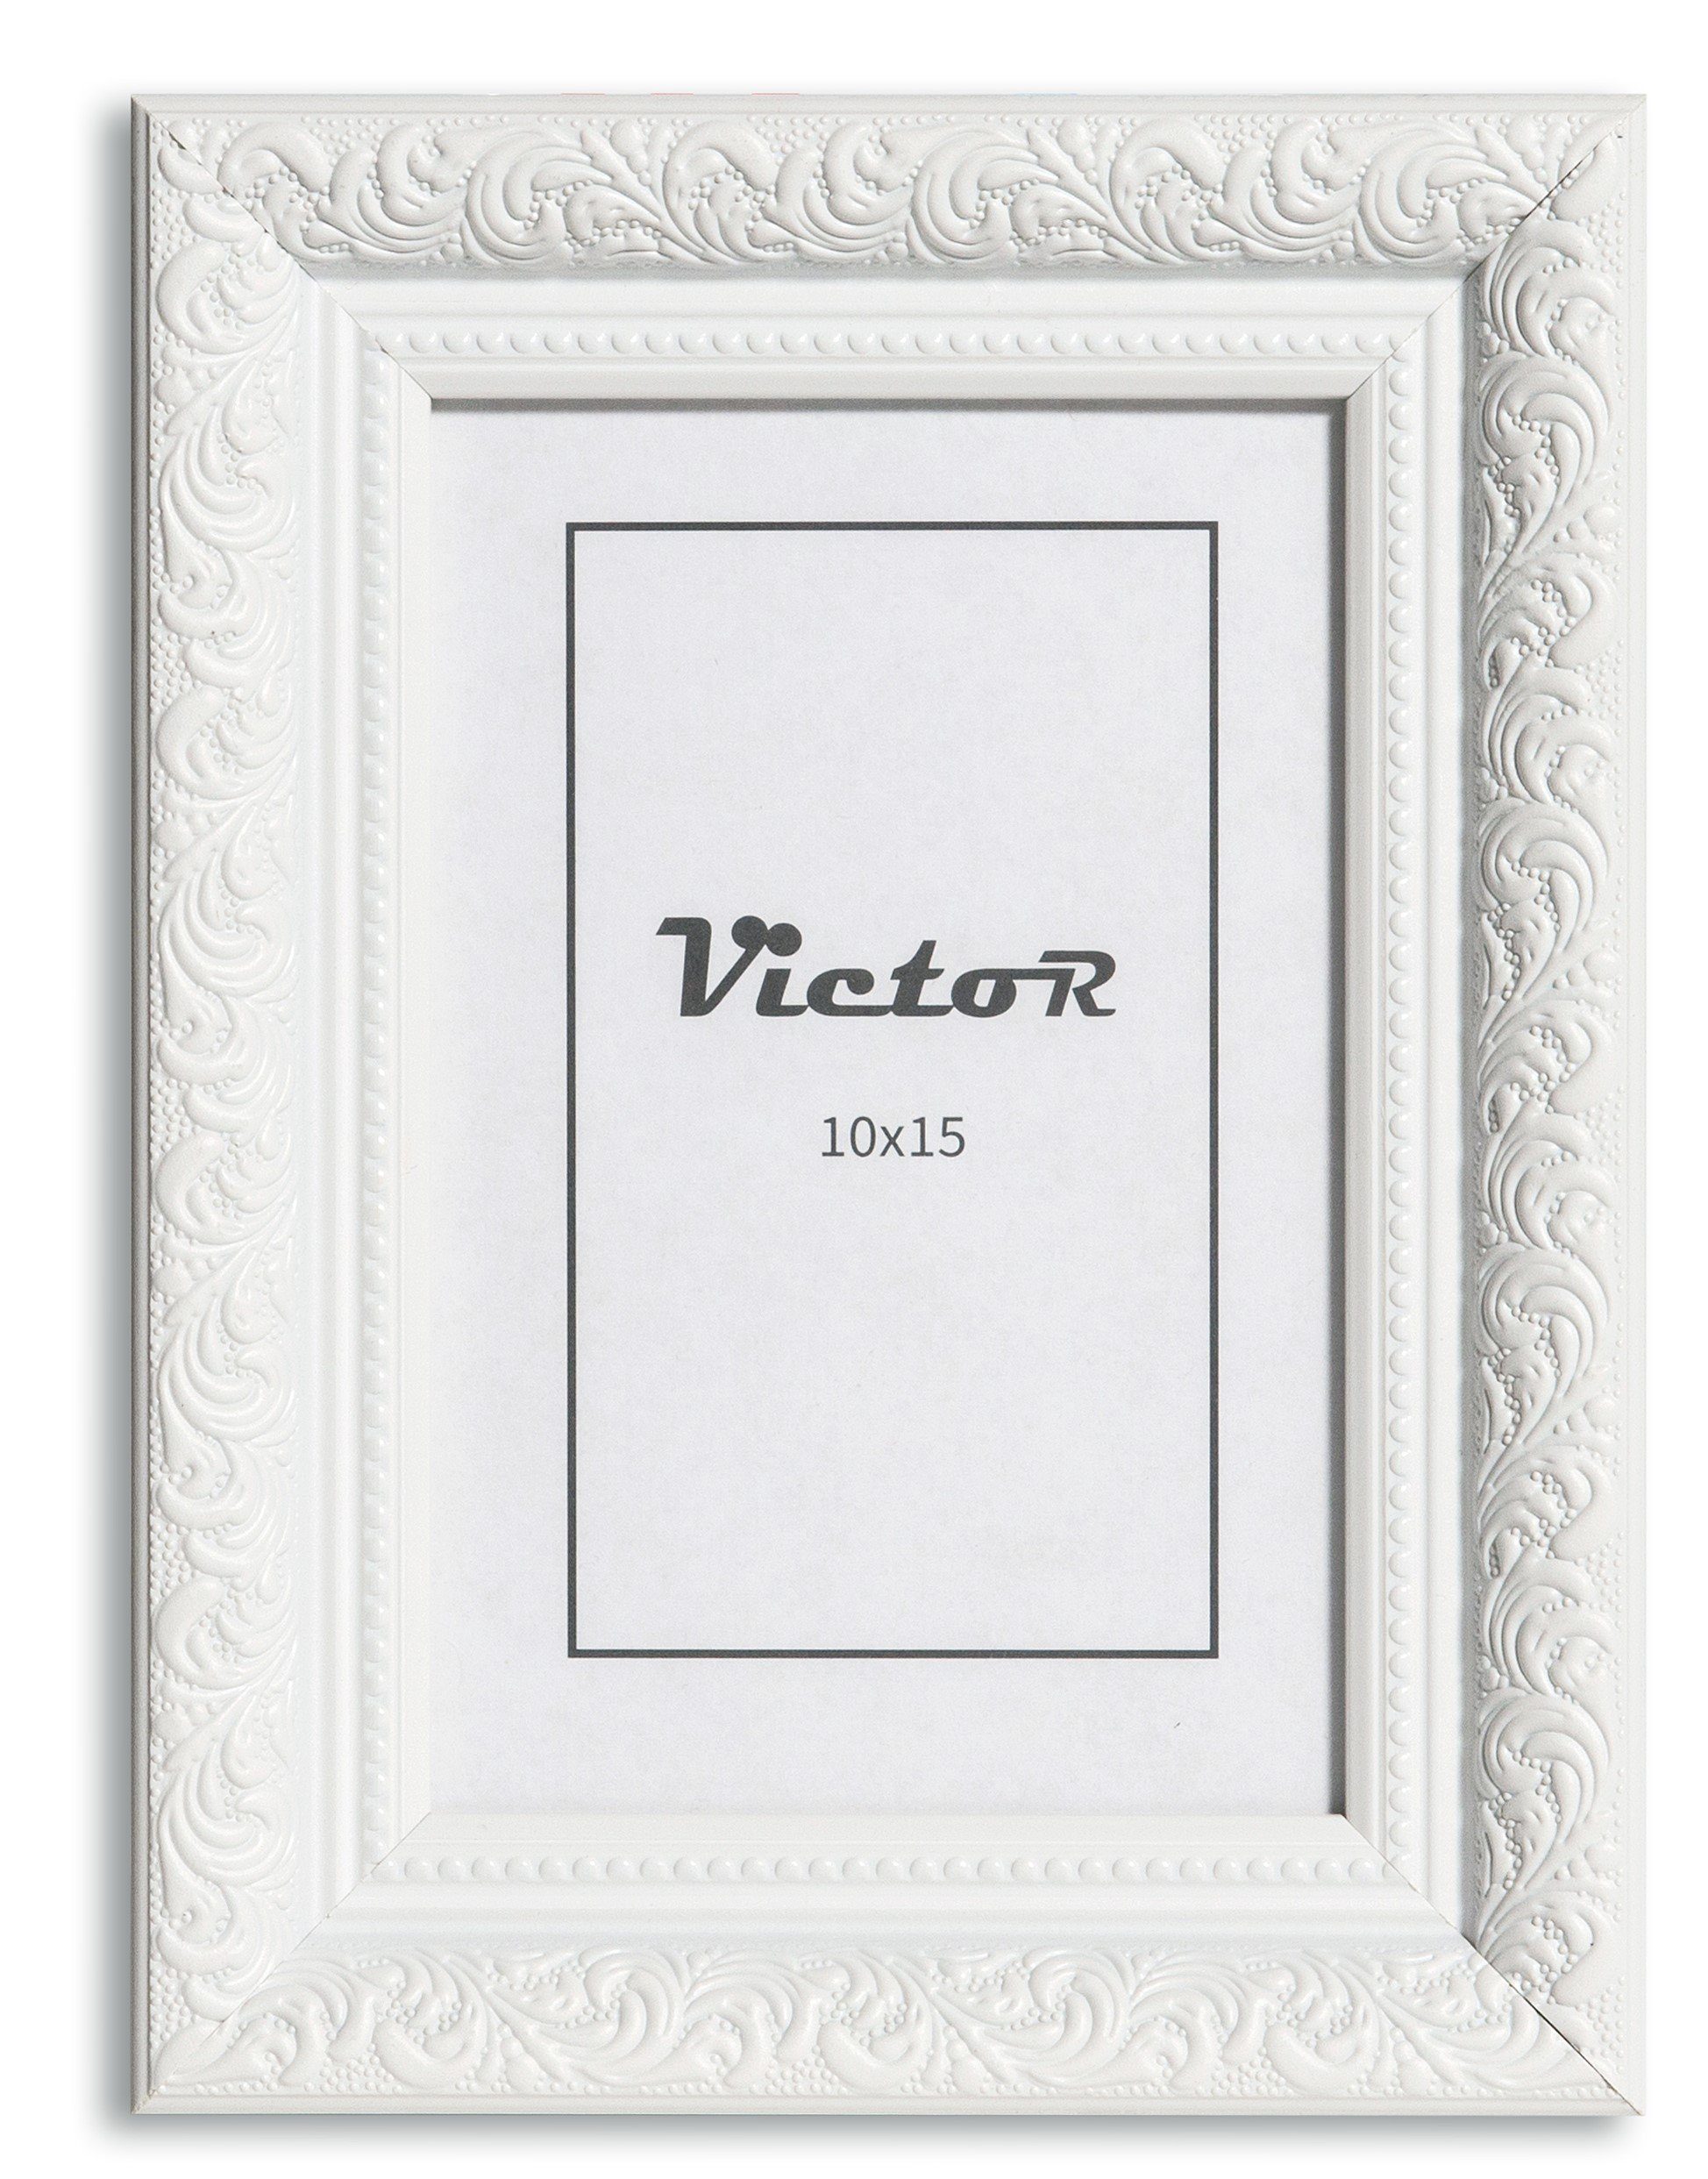 Bilderrahmen Weiß Bilderrahmen (Zenith) cm Bilderrahmen Antik Victor Barock, A6, Rubens, 10x15